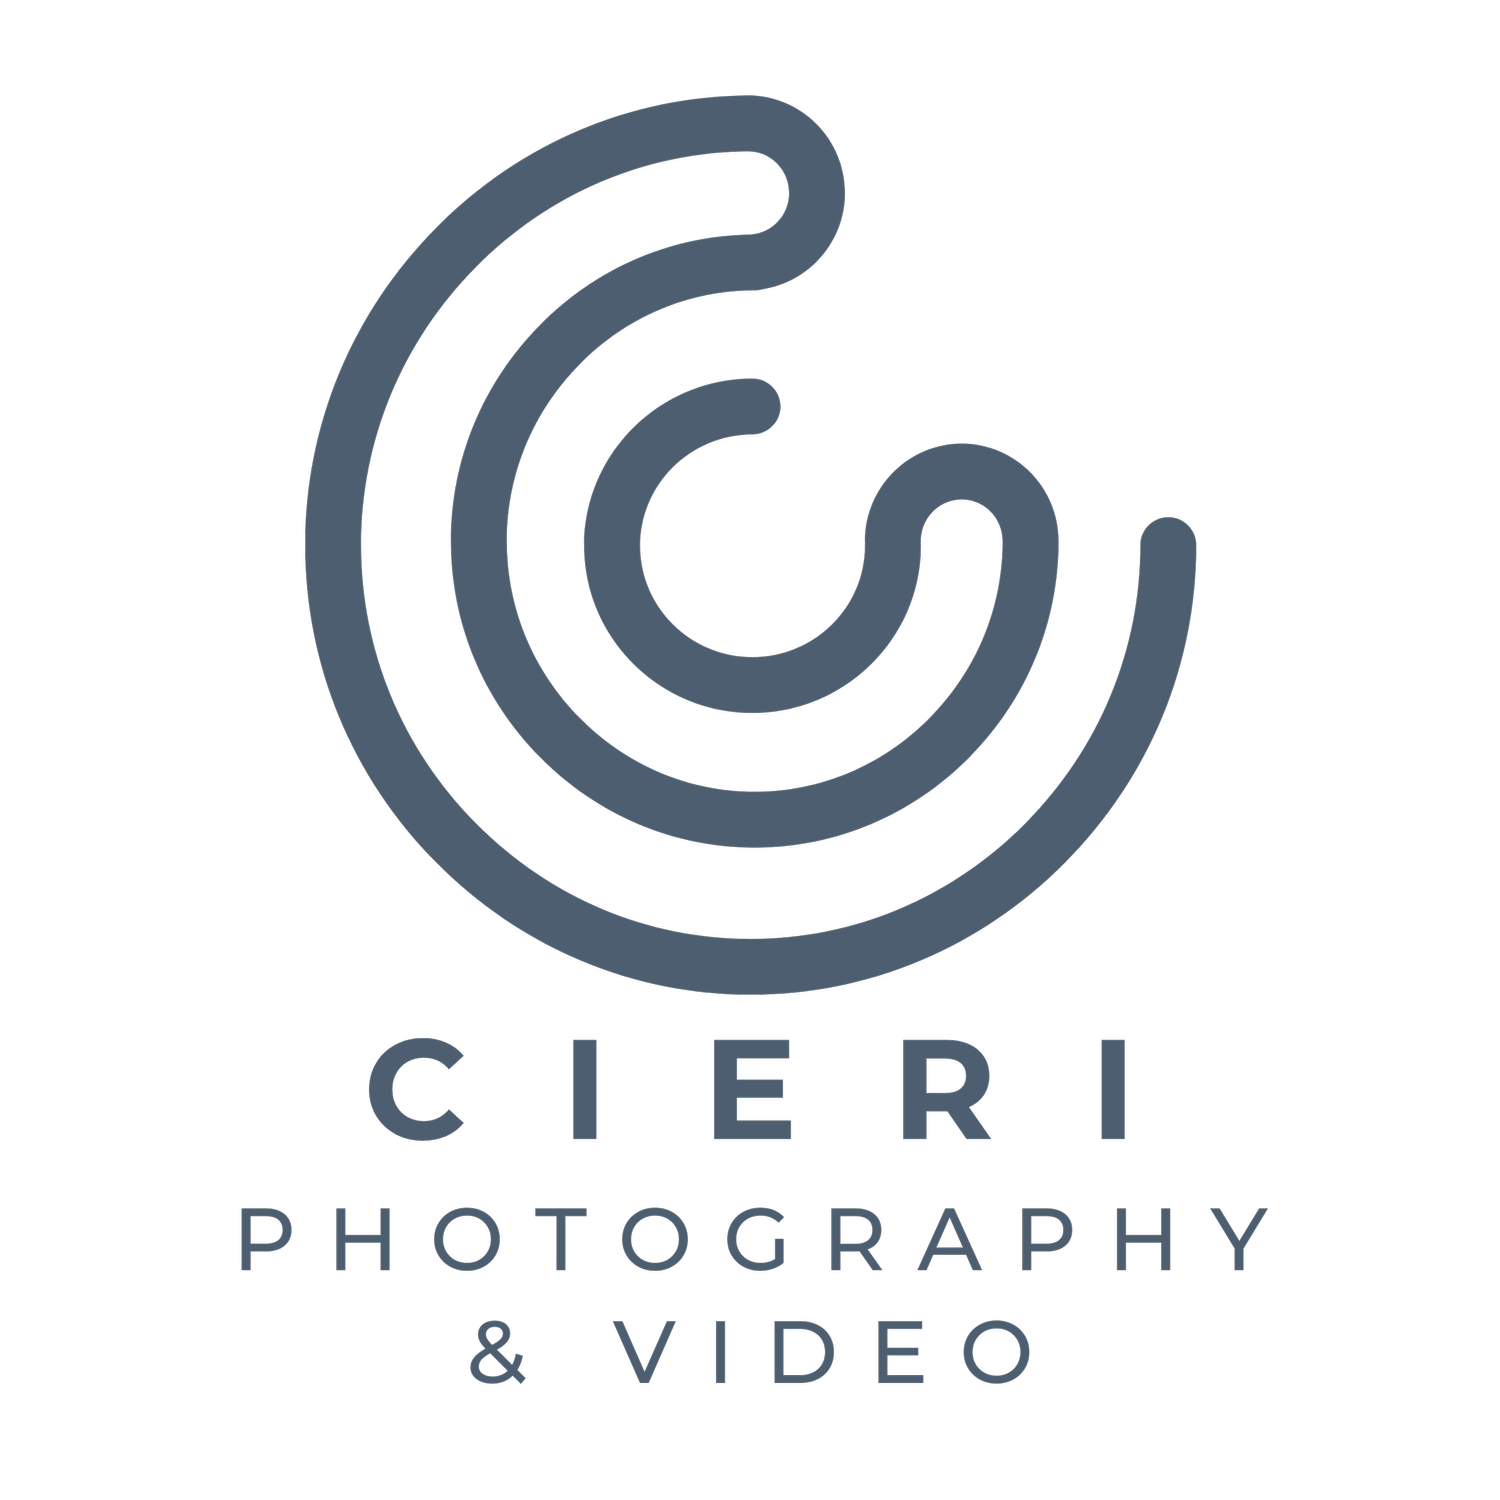 Cieri Photography